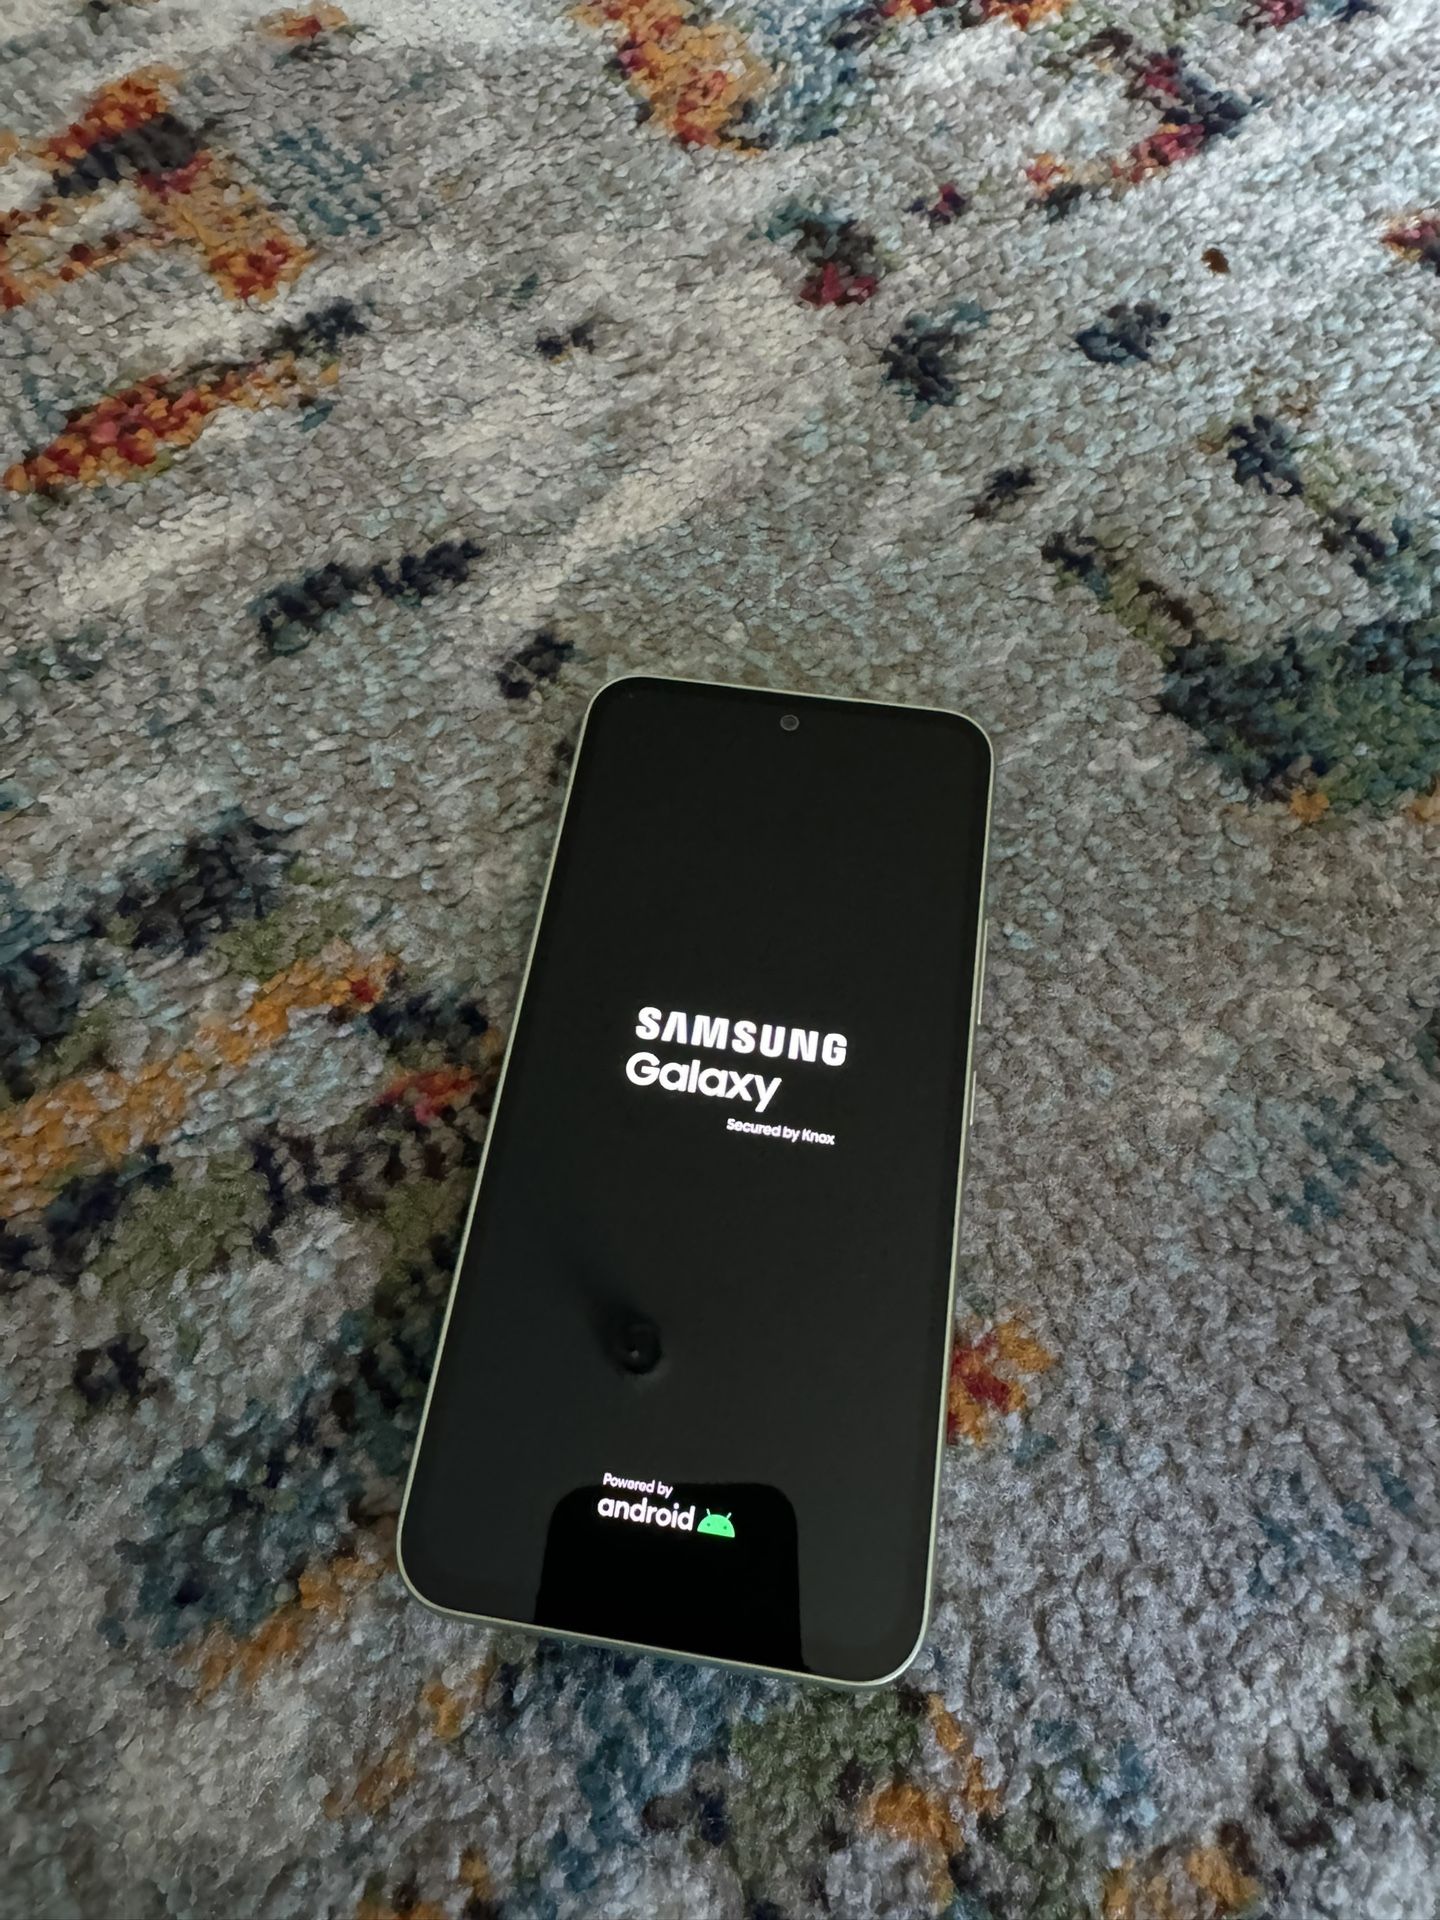 Samsung galaxy A54 5g